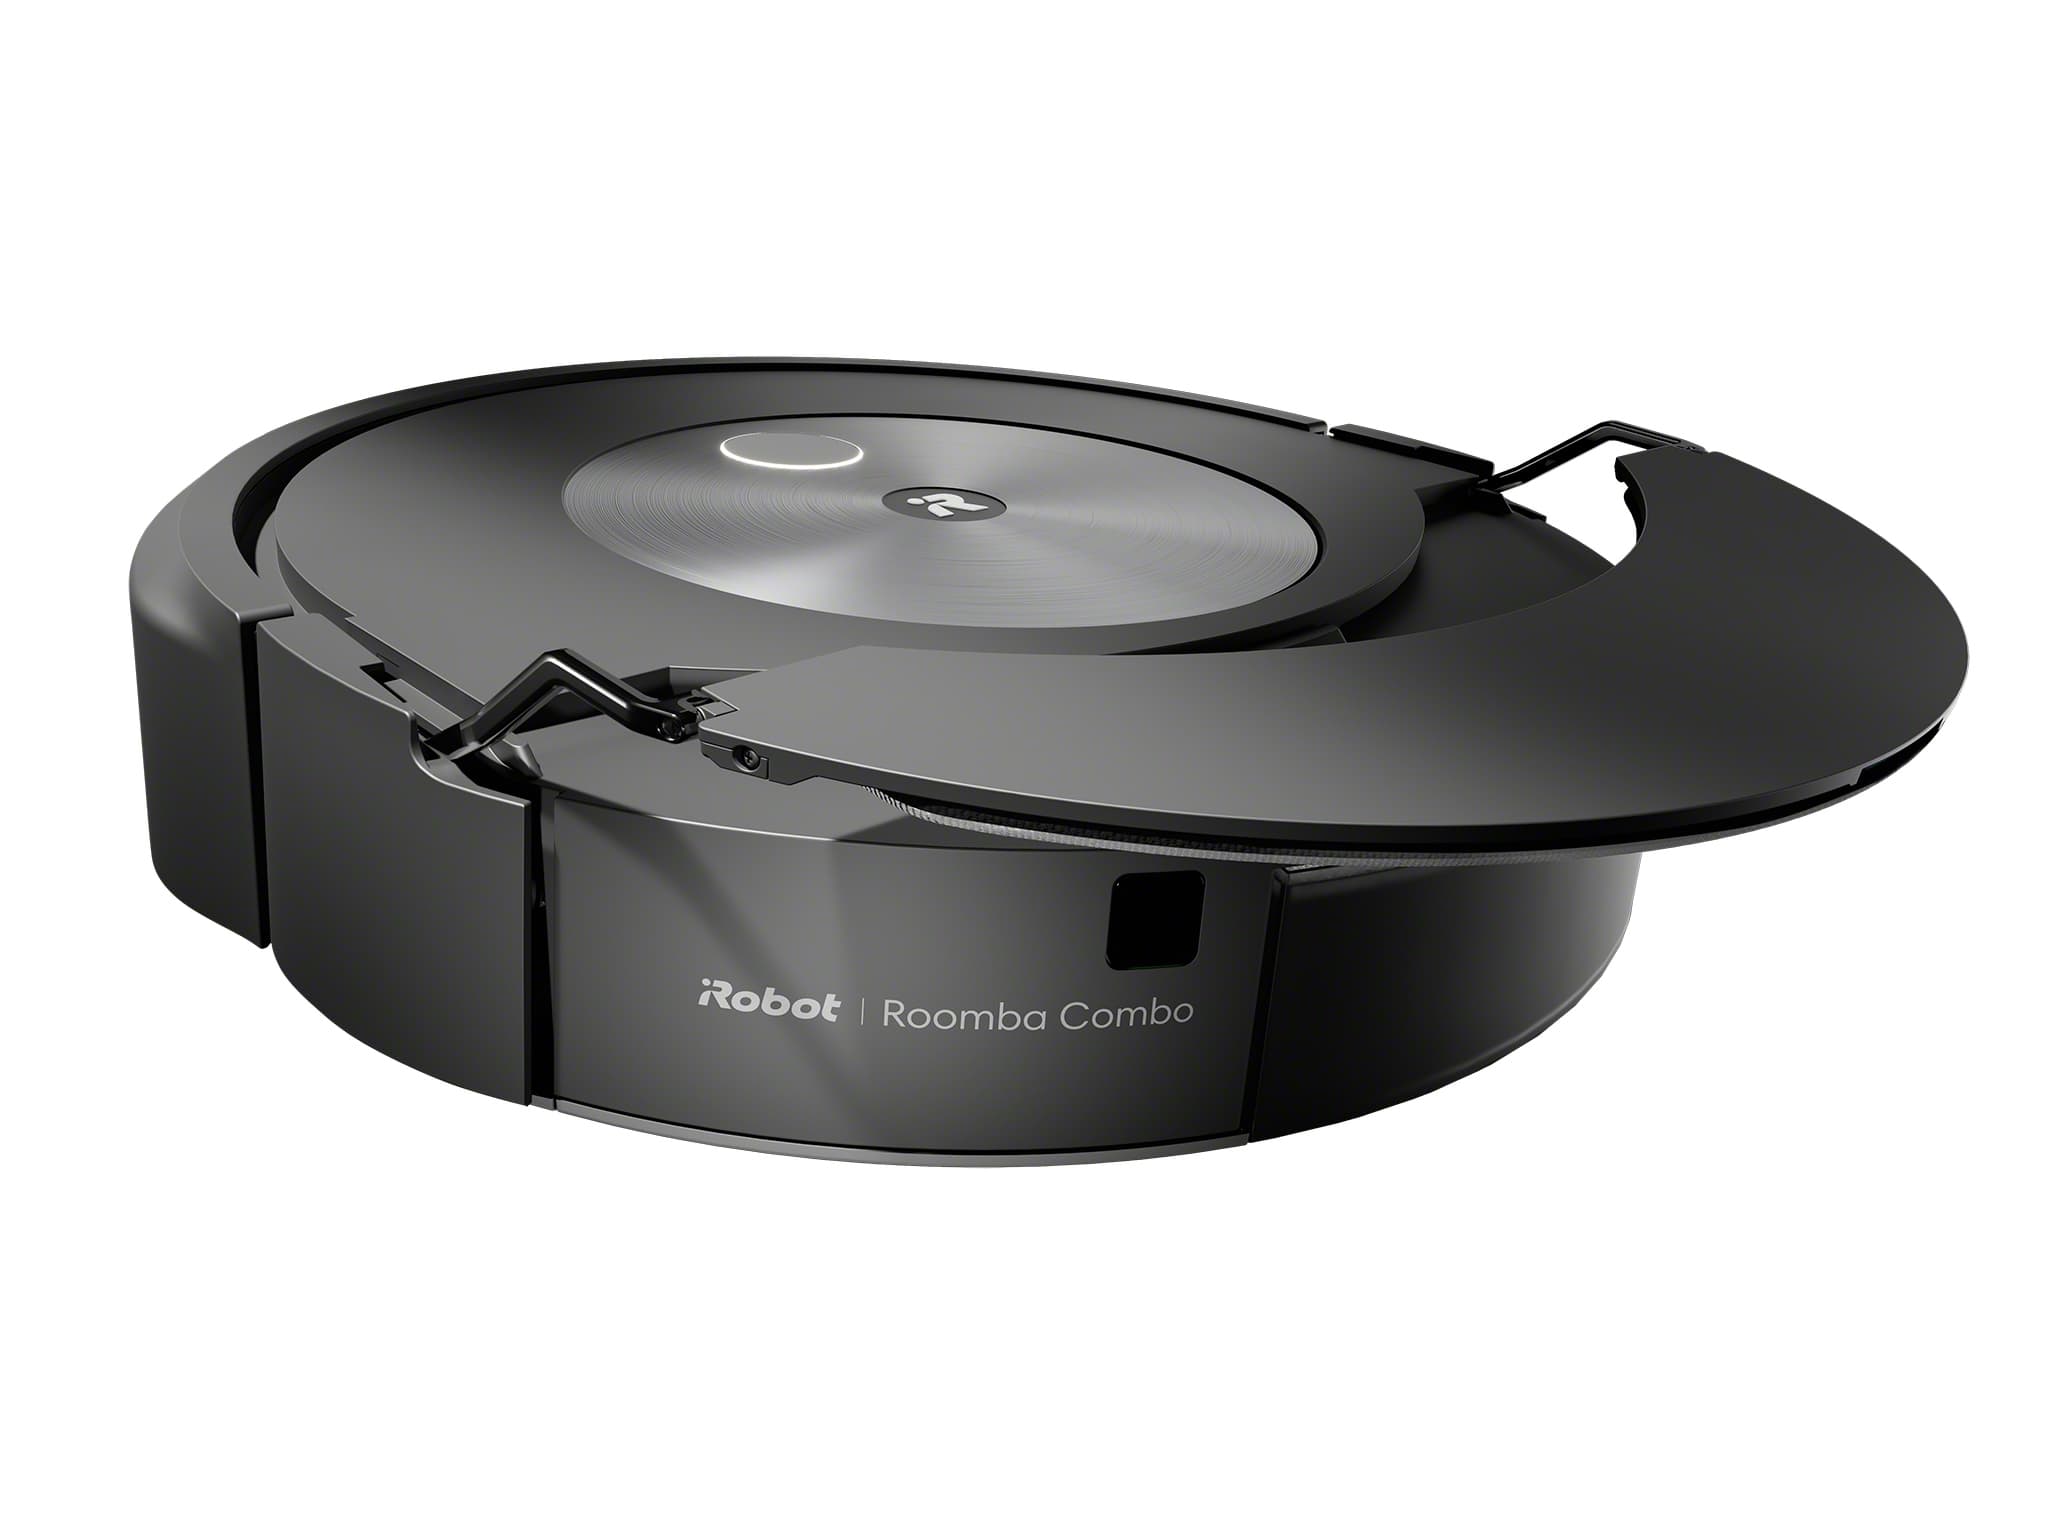 Aspirateur robot Roomba® j7+ avec système d'autovidage